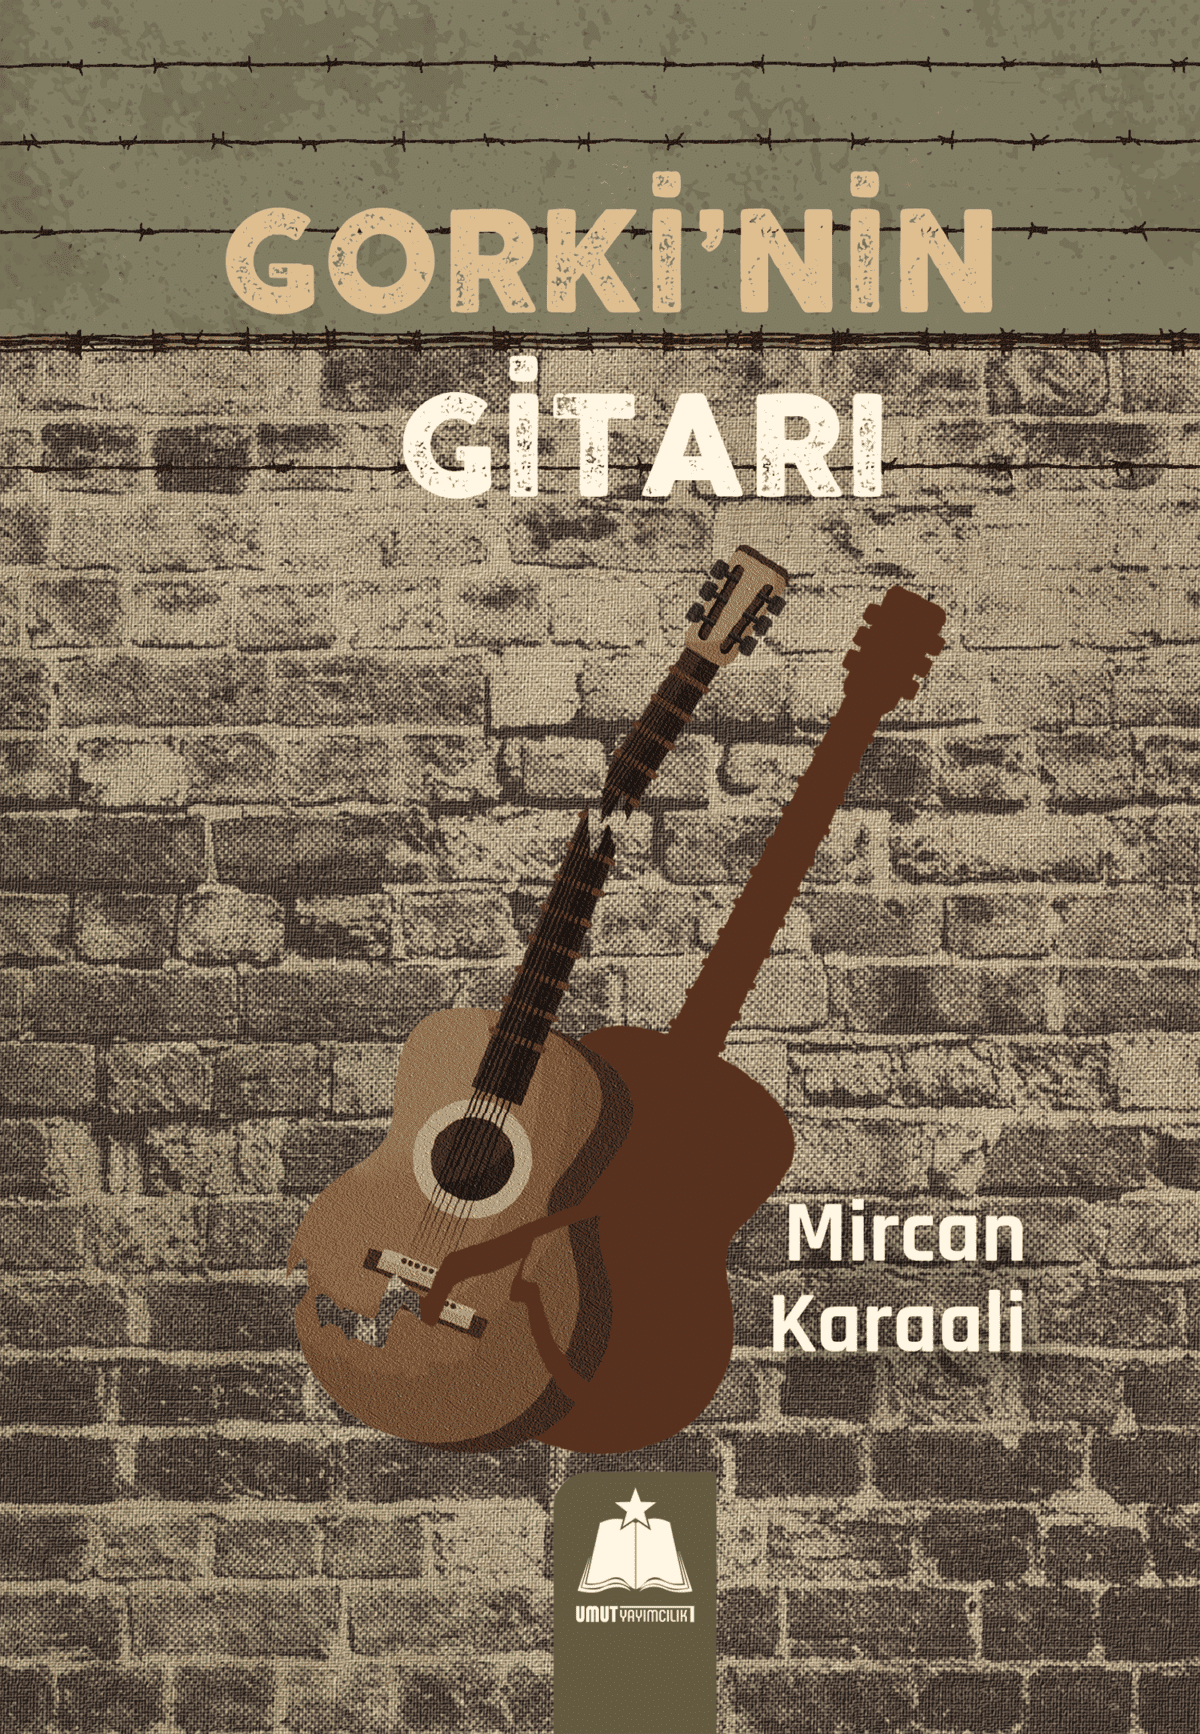 Gorki'nin Gitarı